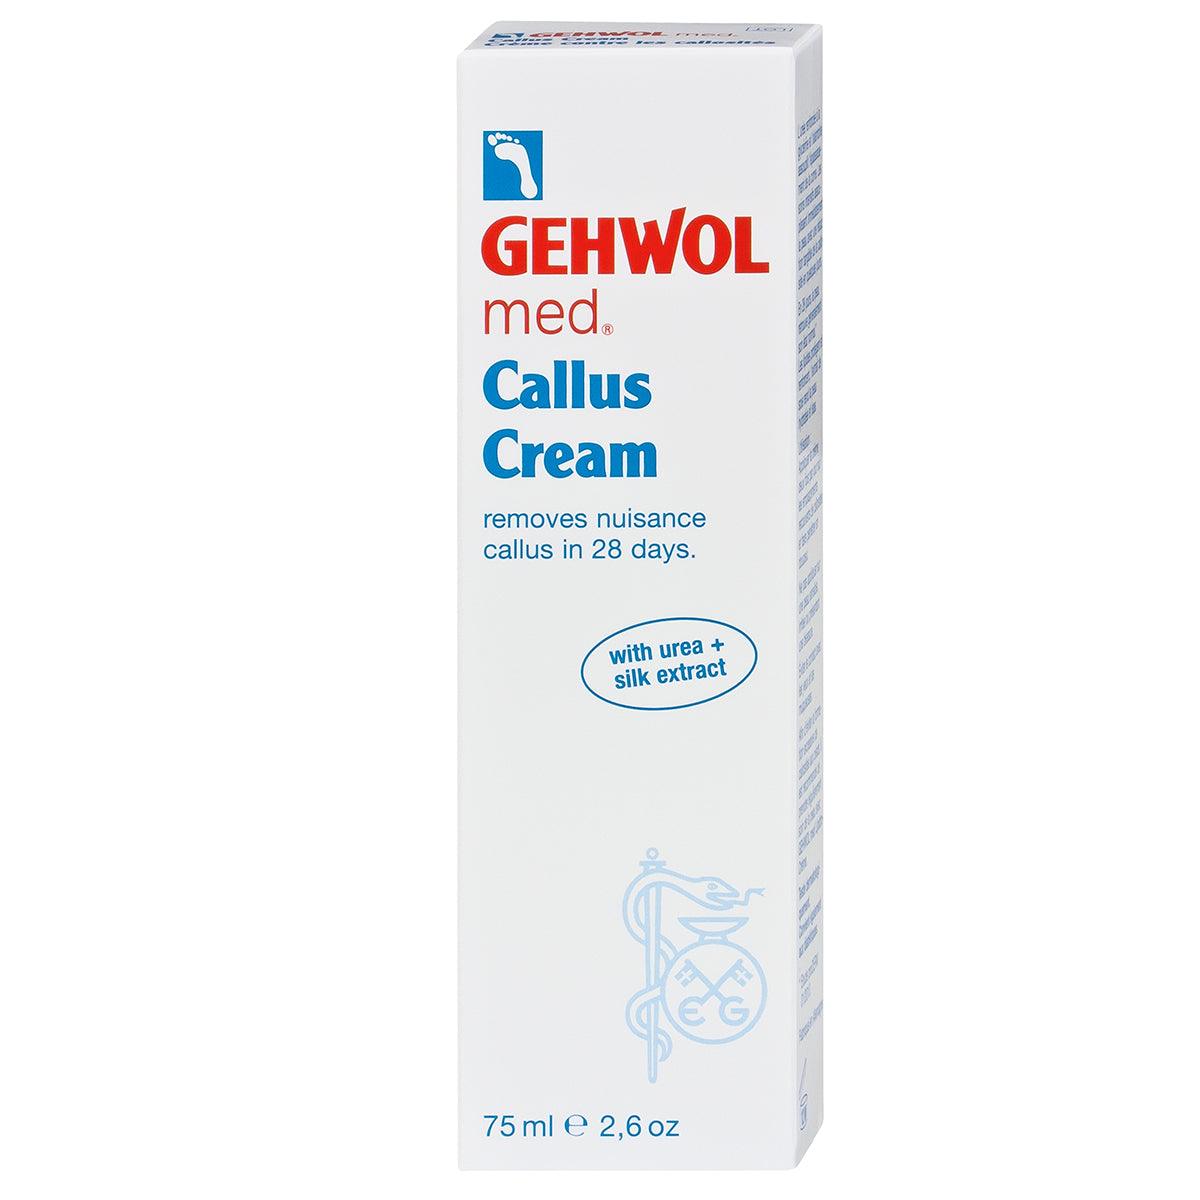 Gehwol med. Callus Cream | Fotpleie | Gehwol | JK SHOP | JK Barber og herre frisør | Lavepriser | Best